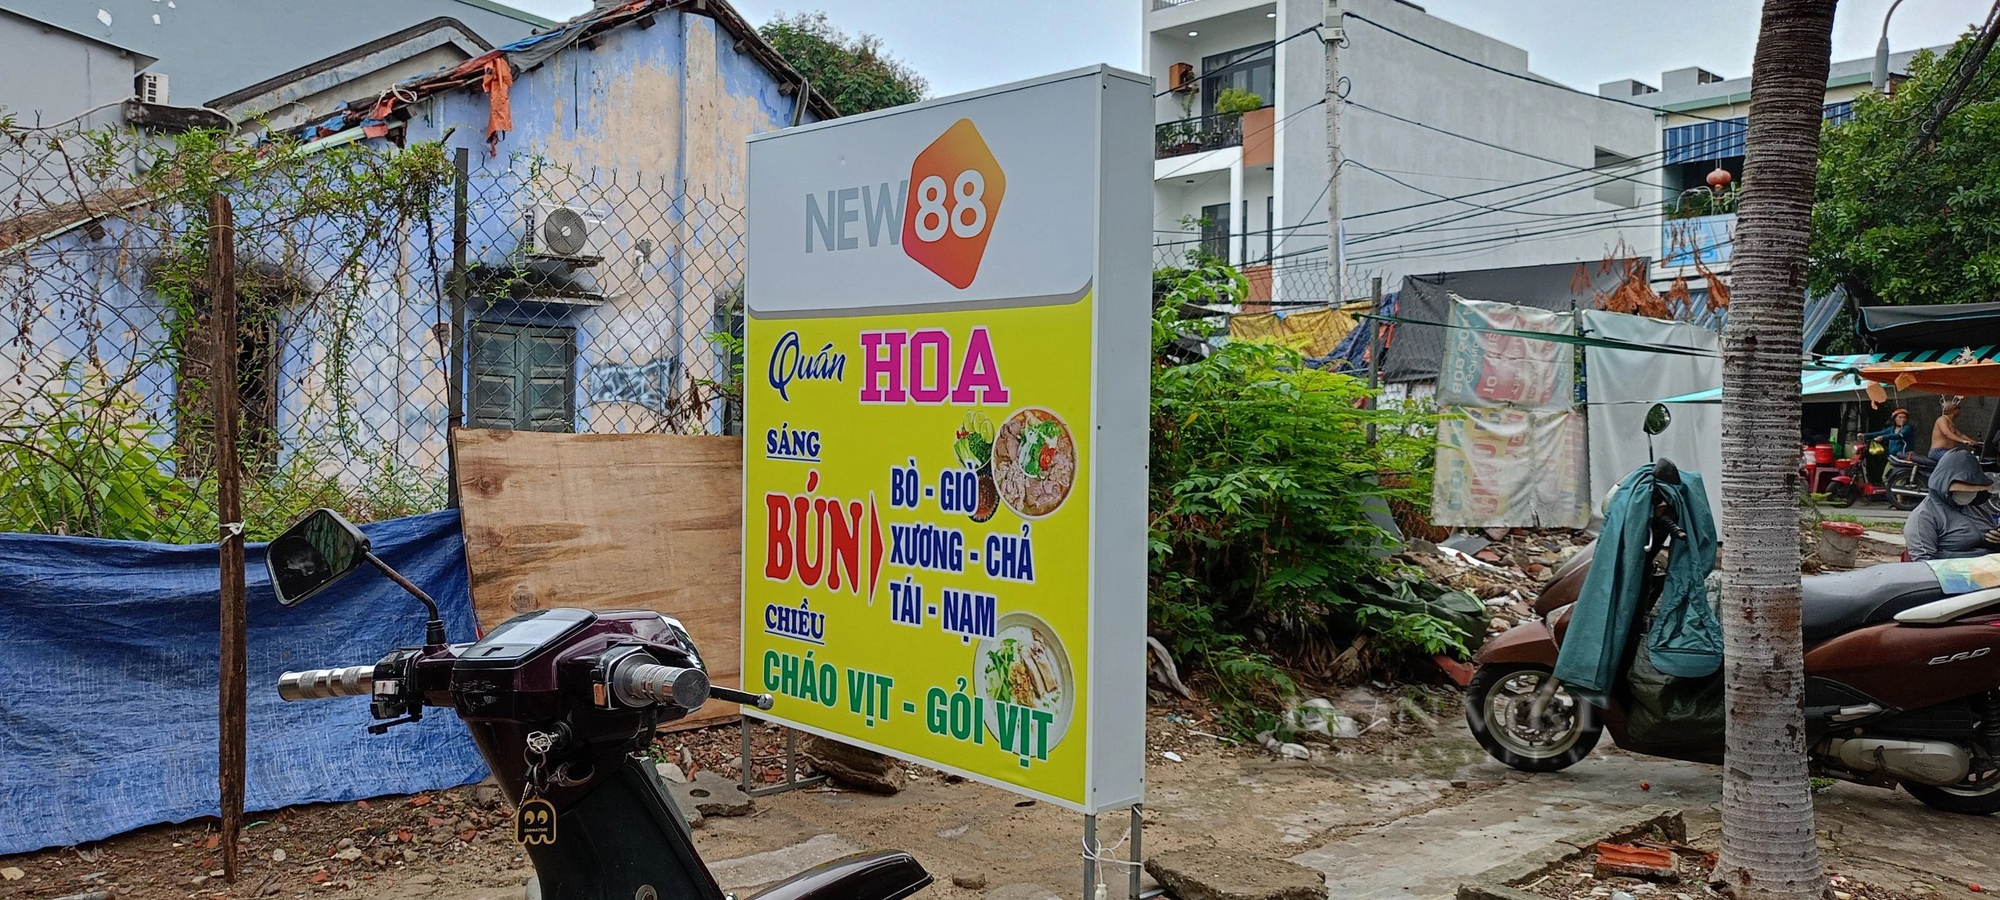 Tràn lan biển hiệu quảng cáo đánh bạc xuất hiện tại Đà Nẵng- Ảnh 1.